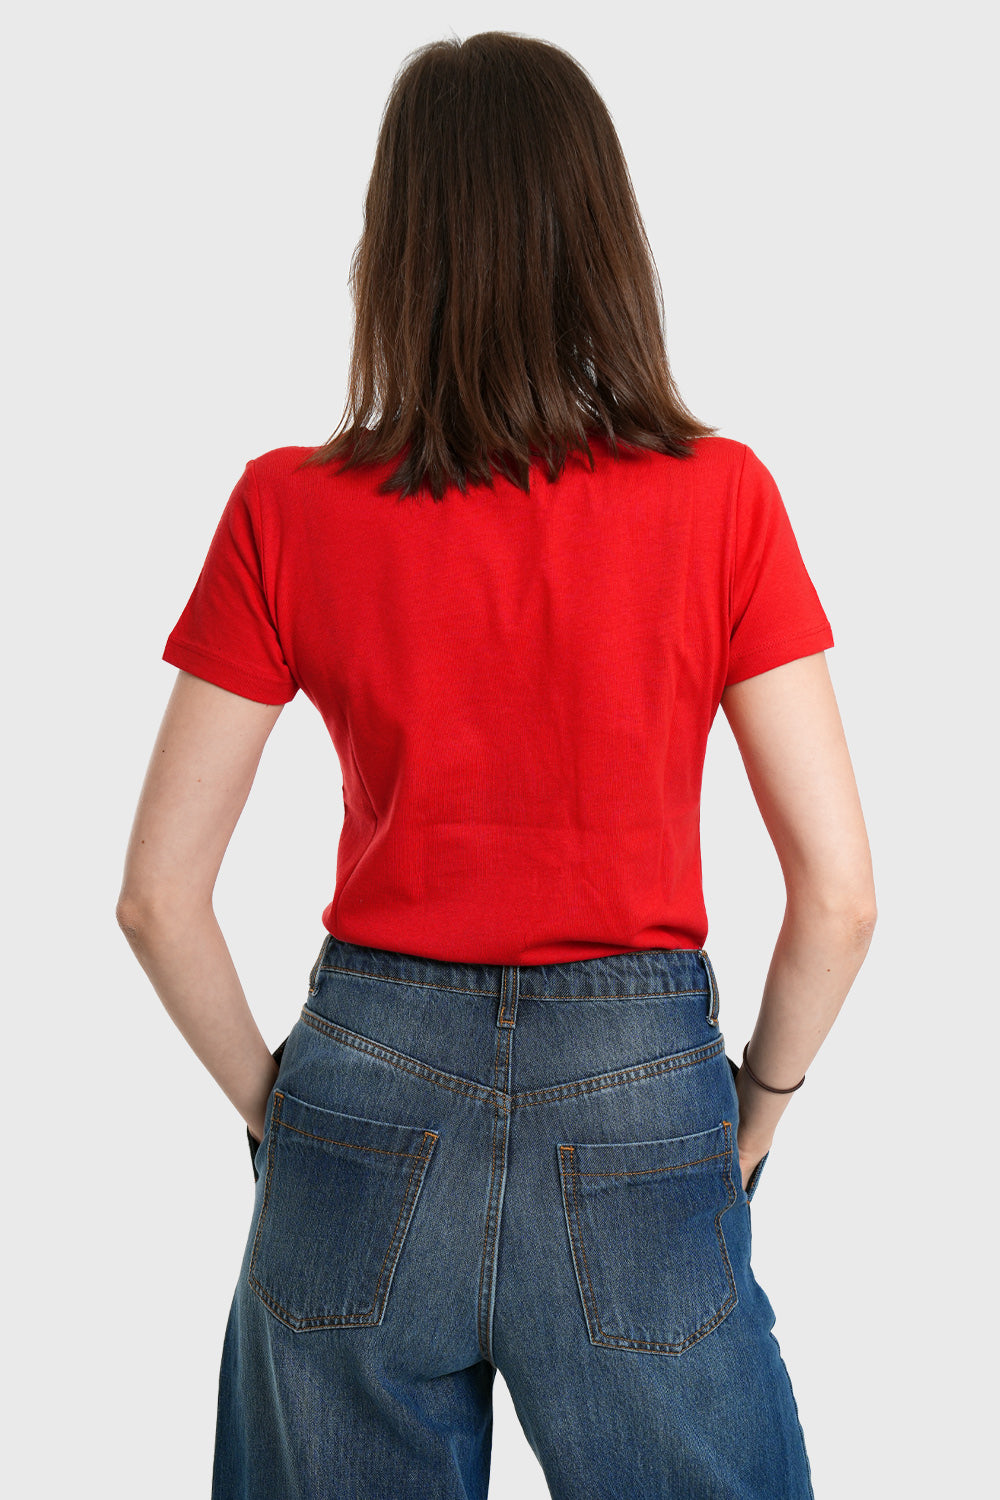 Tipra Organic Cotton Shirt - red